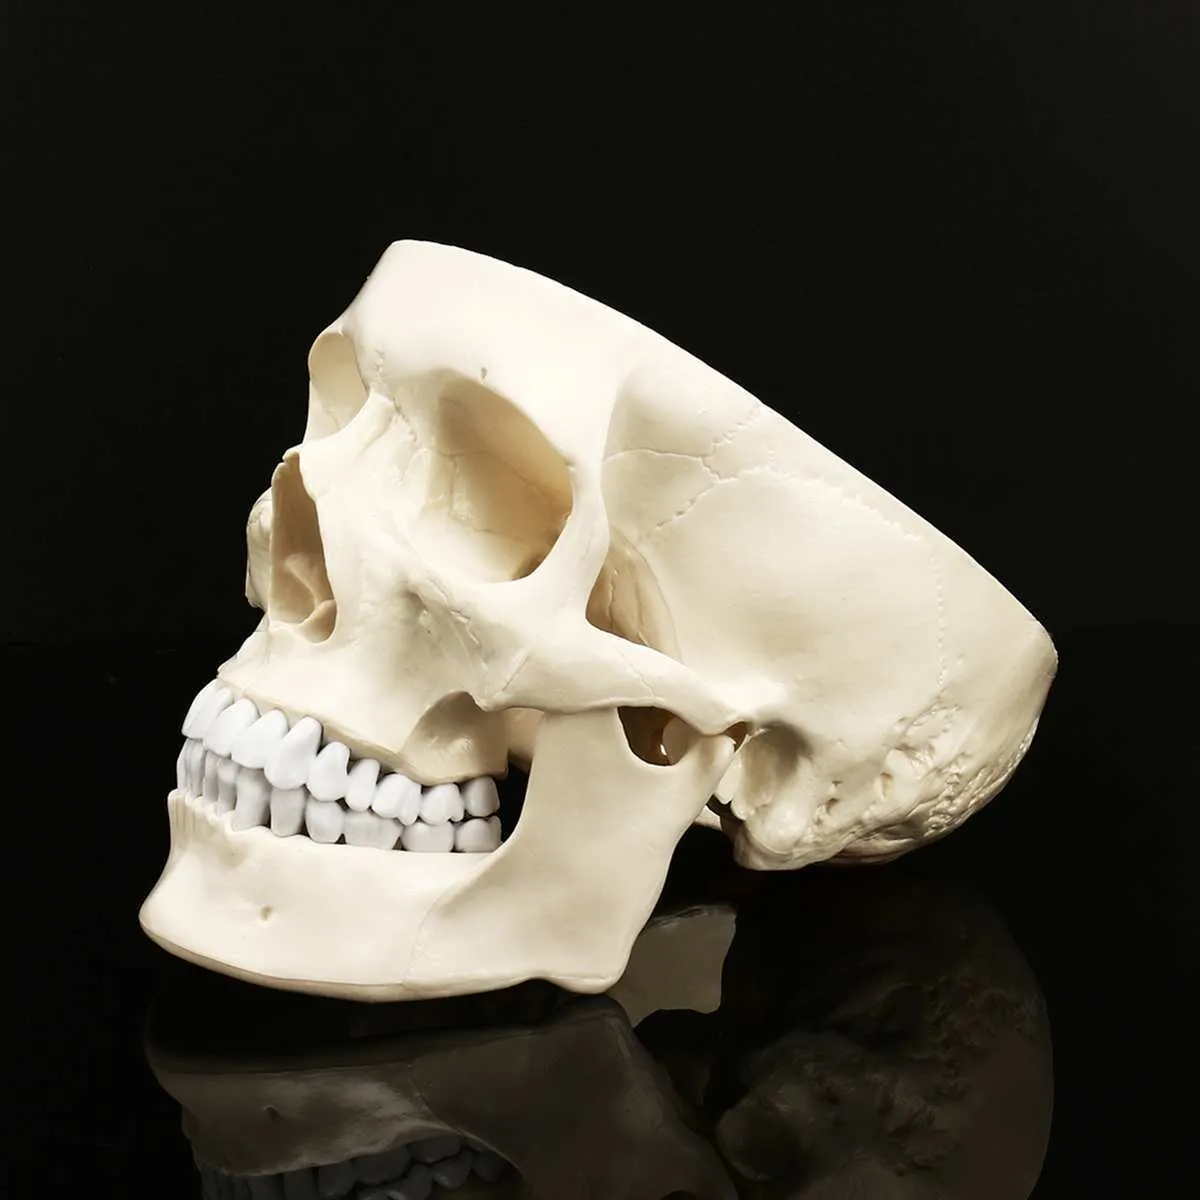 11 Anatomia anatomica umana Testa in resina Scheletro Cranio Modello didattico Staccabile Home Decor Resina Cranio umano Scultura Statua T205349666